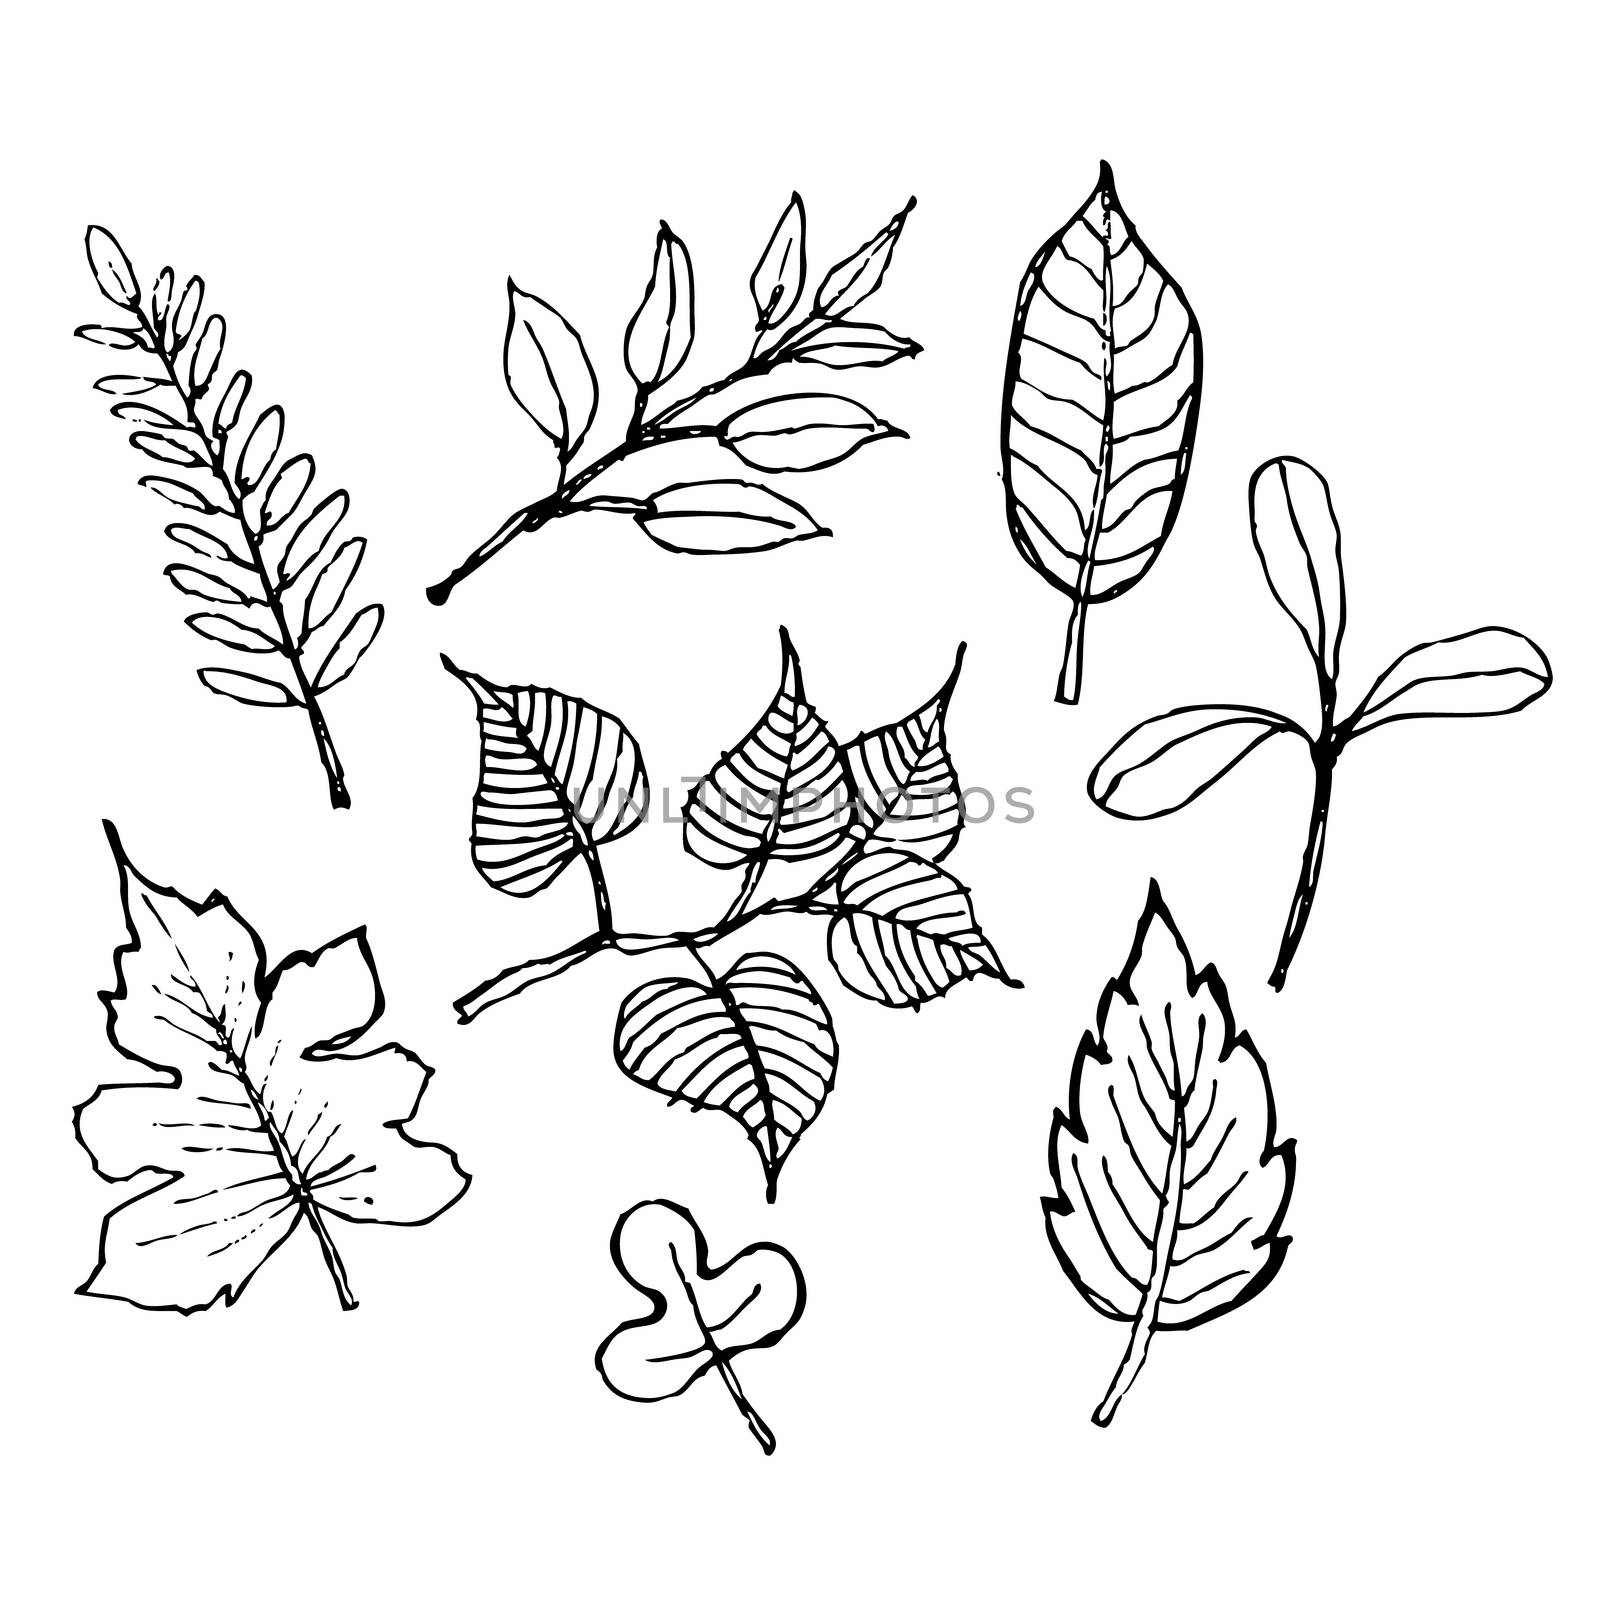 sketch illustration of leaf design,  doodle hand drawn